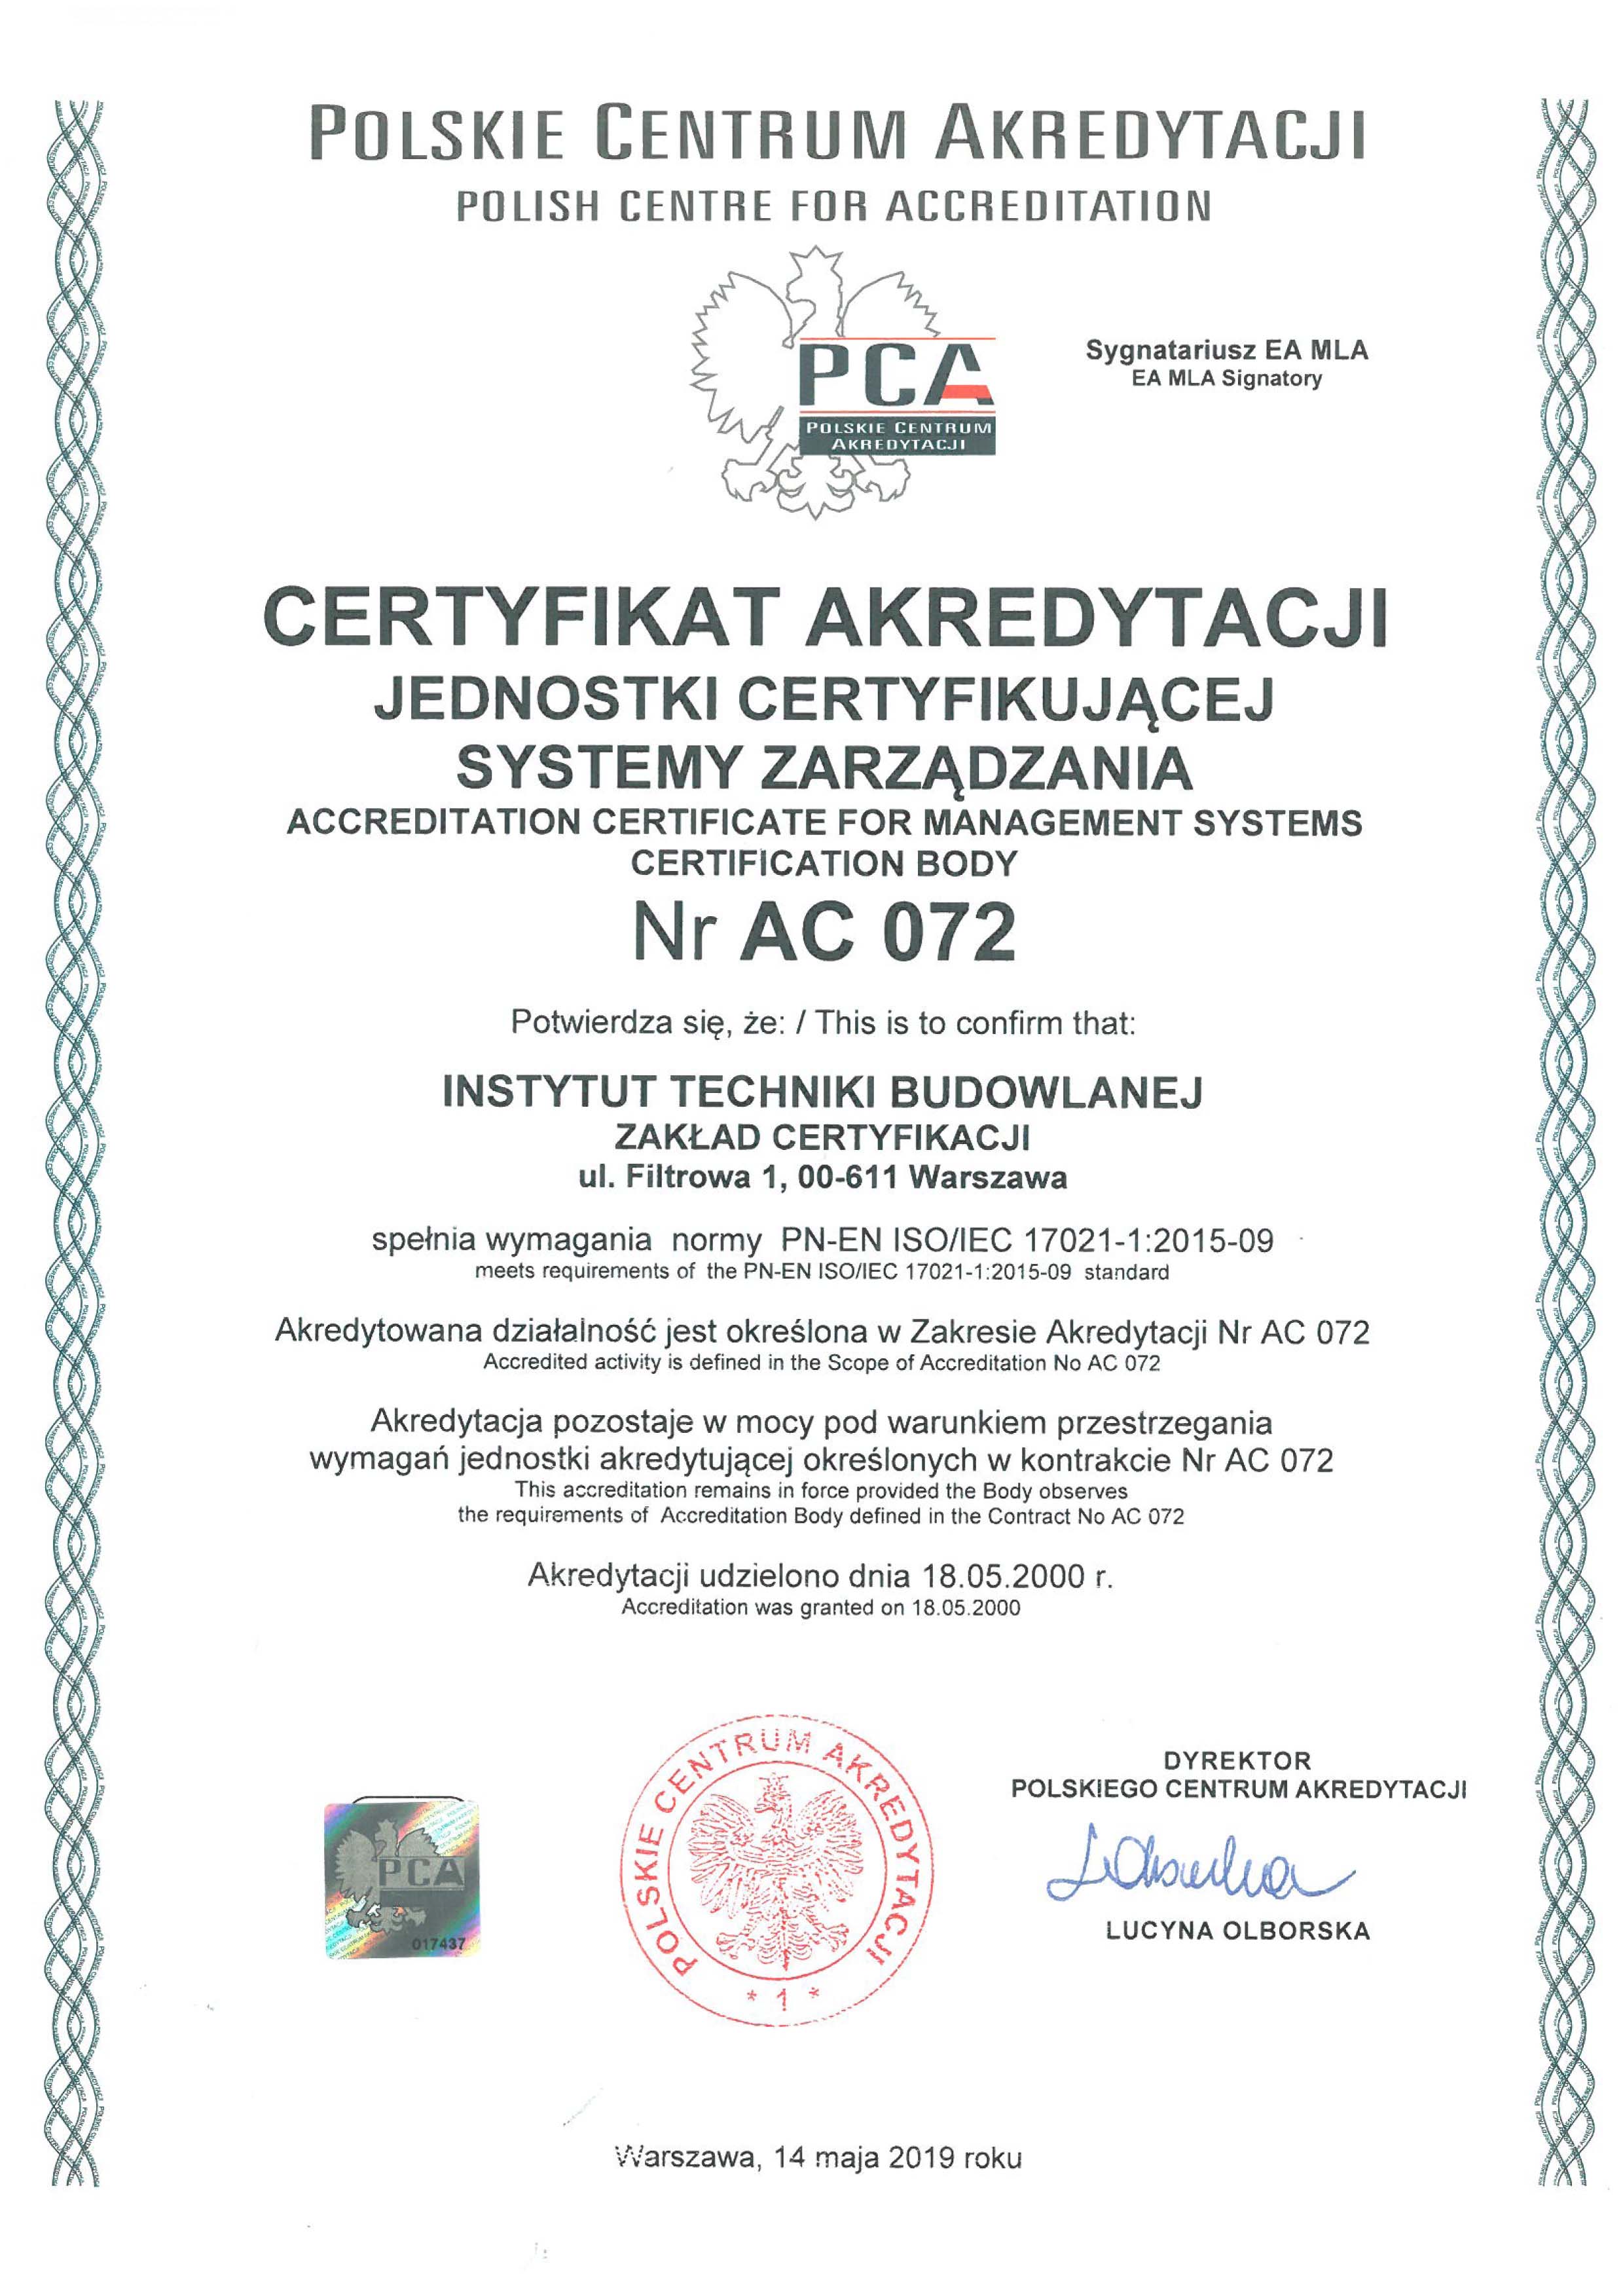 Certyfikat Akredytacji Jednostki certyfikującej systemy zarządzania Nr AC 072 potwierdzający spełnienie przez ITB Zakład Certyfikacji wymagań normy PN-EN ISO/EC 17021-1:2015-09. Akredytowana działalność określona jest w Zakresie Akredytacji AC 072.